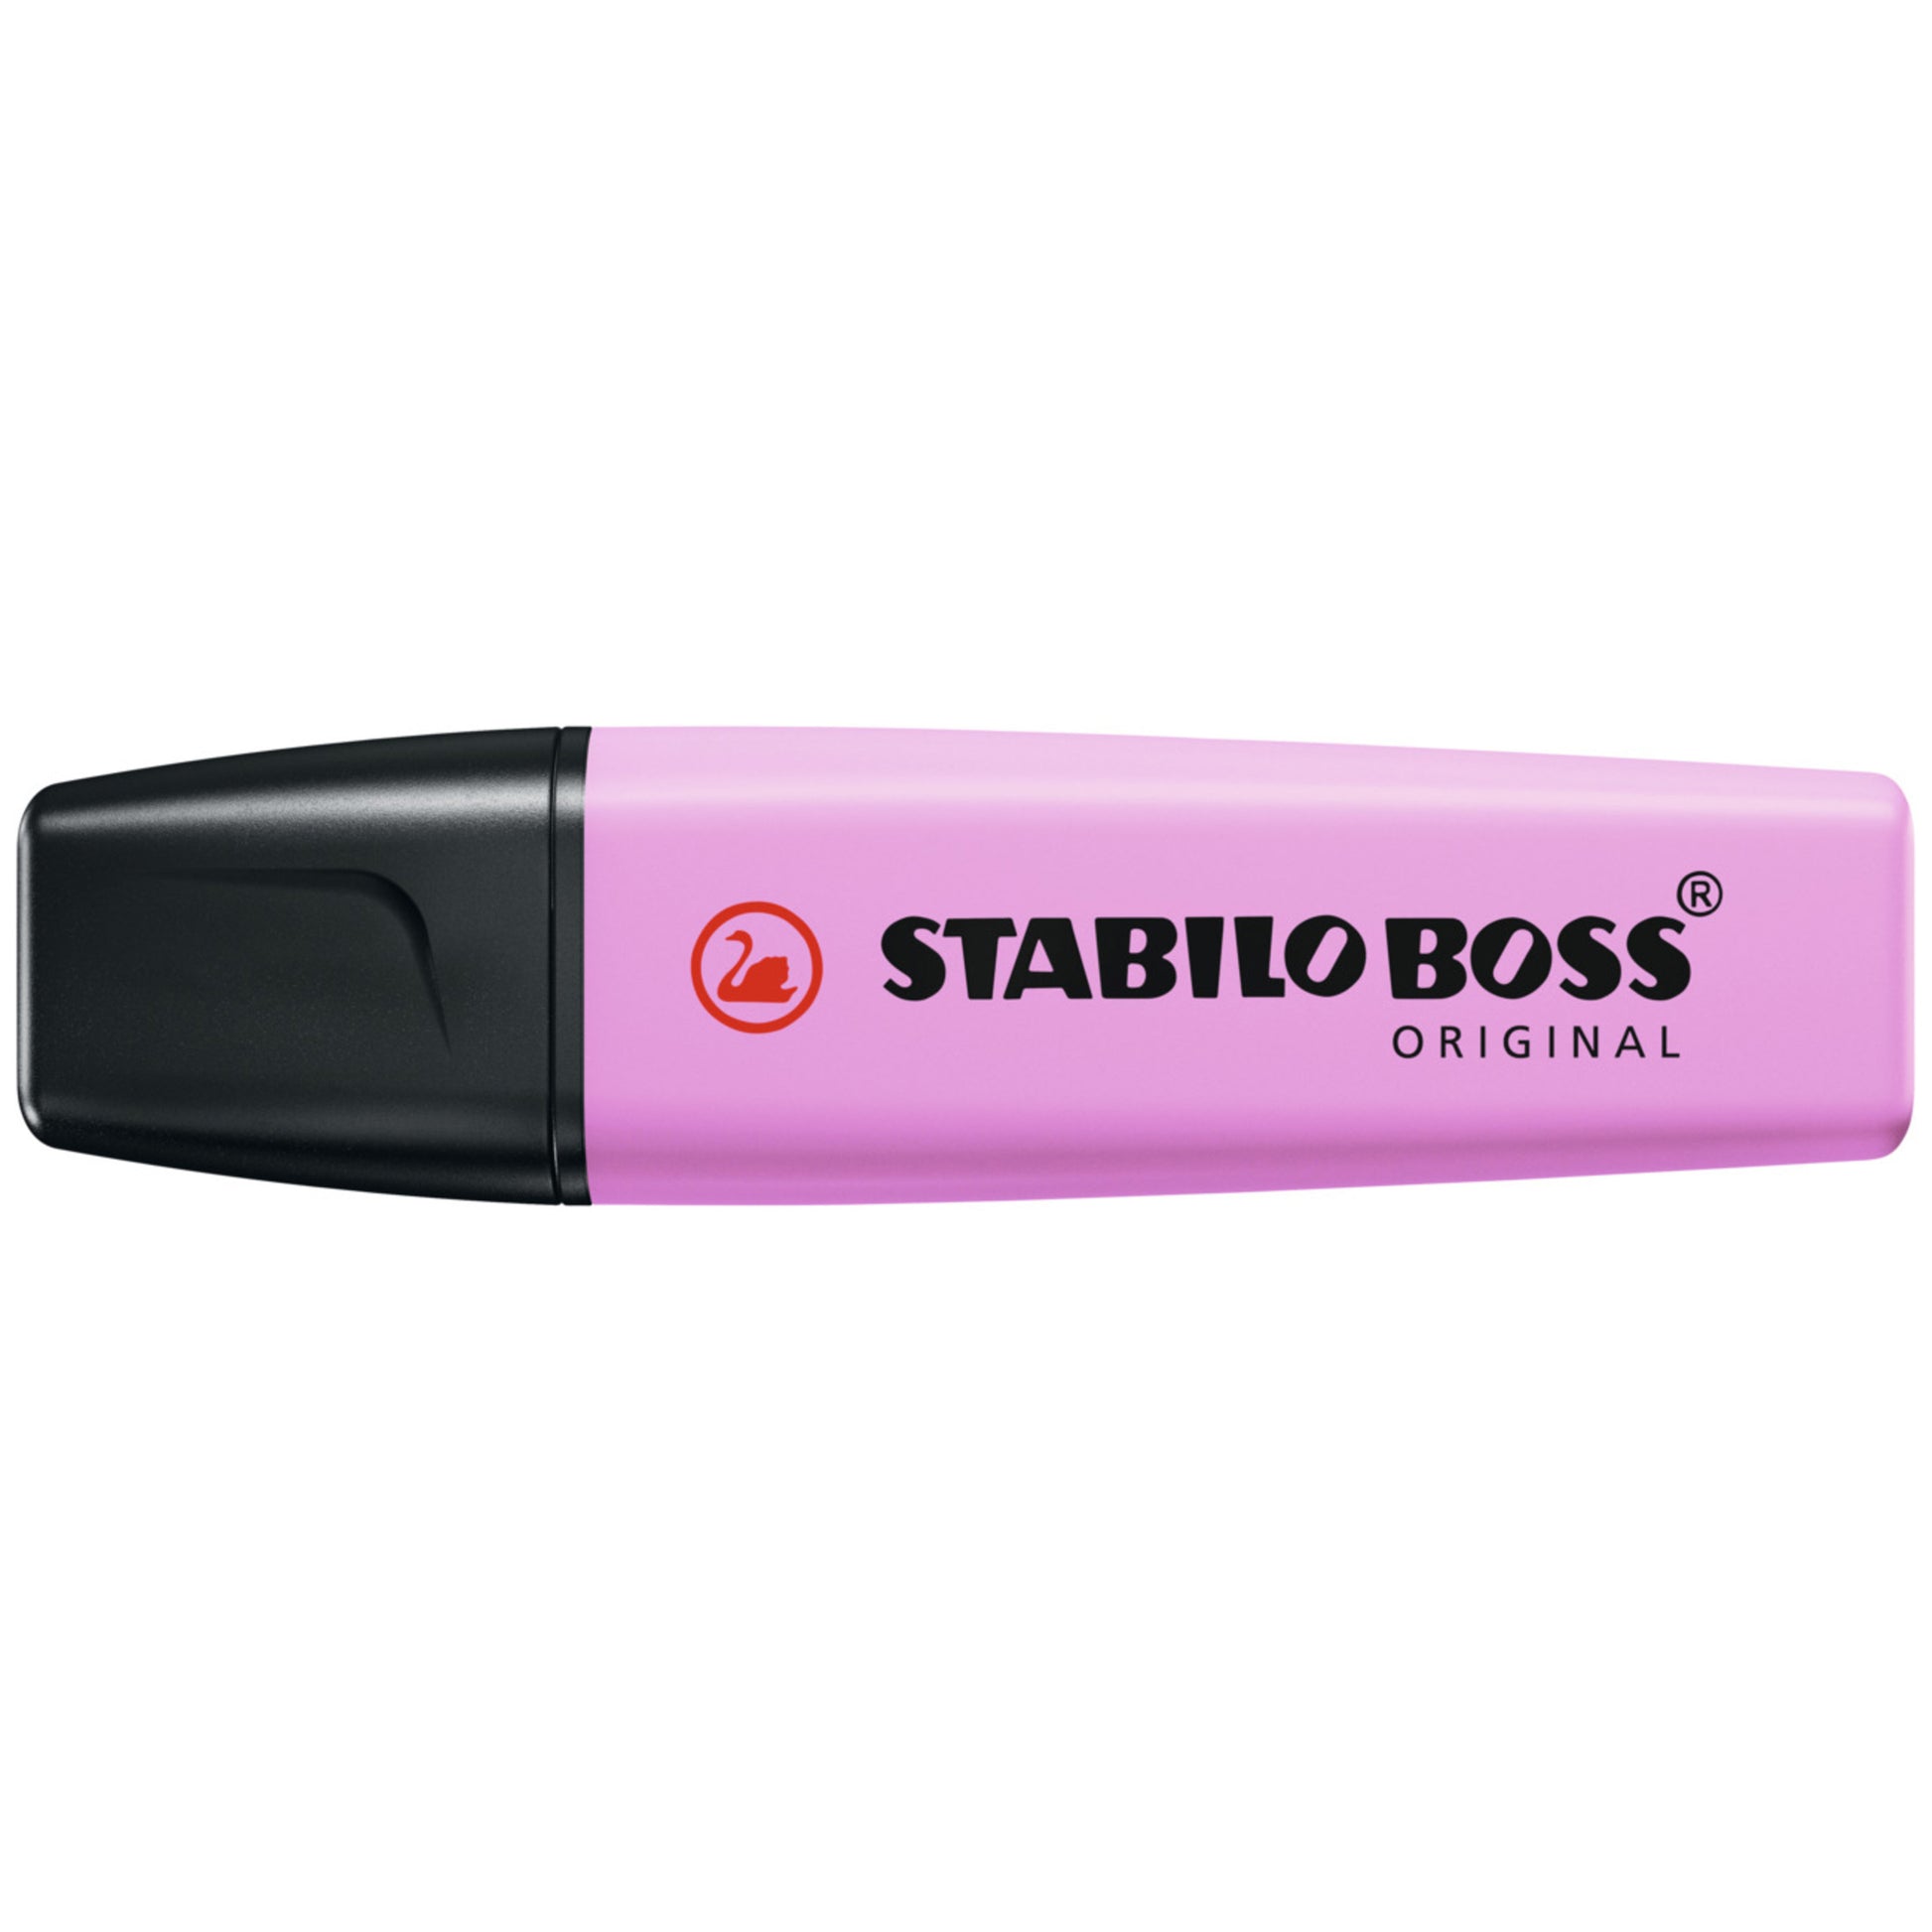 Stabilo BOSS Pastel Highlighters - Frozen Fuchsia by Stabilo - K. A. Artist Shop